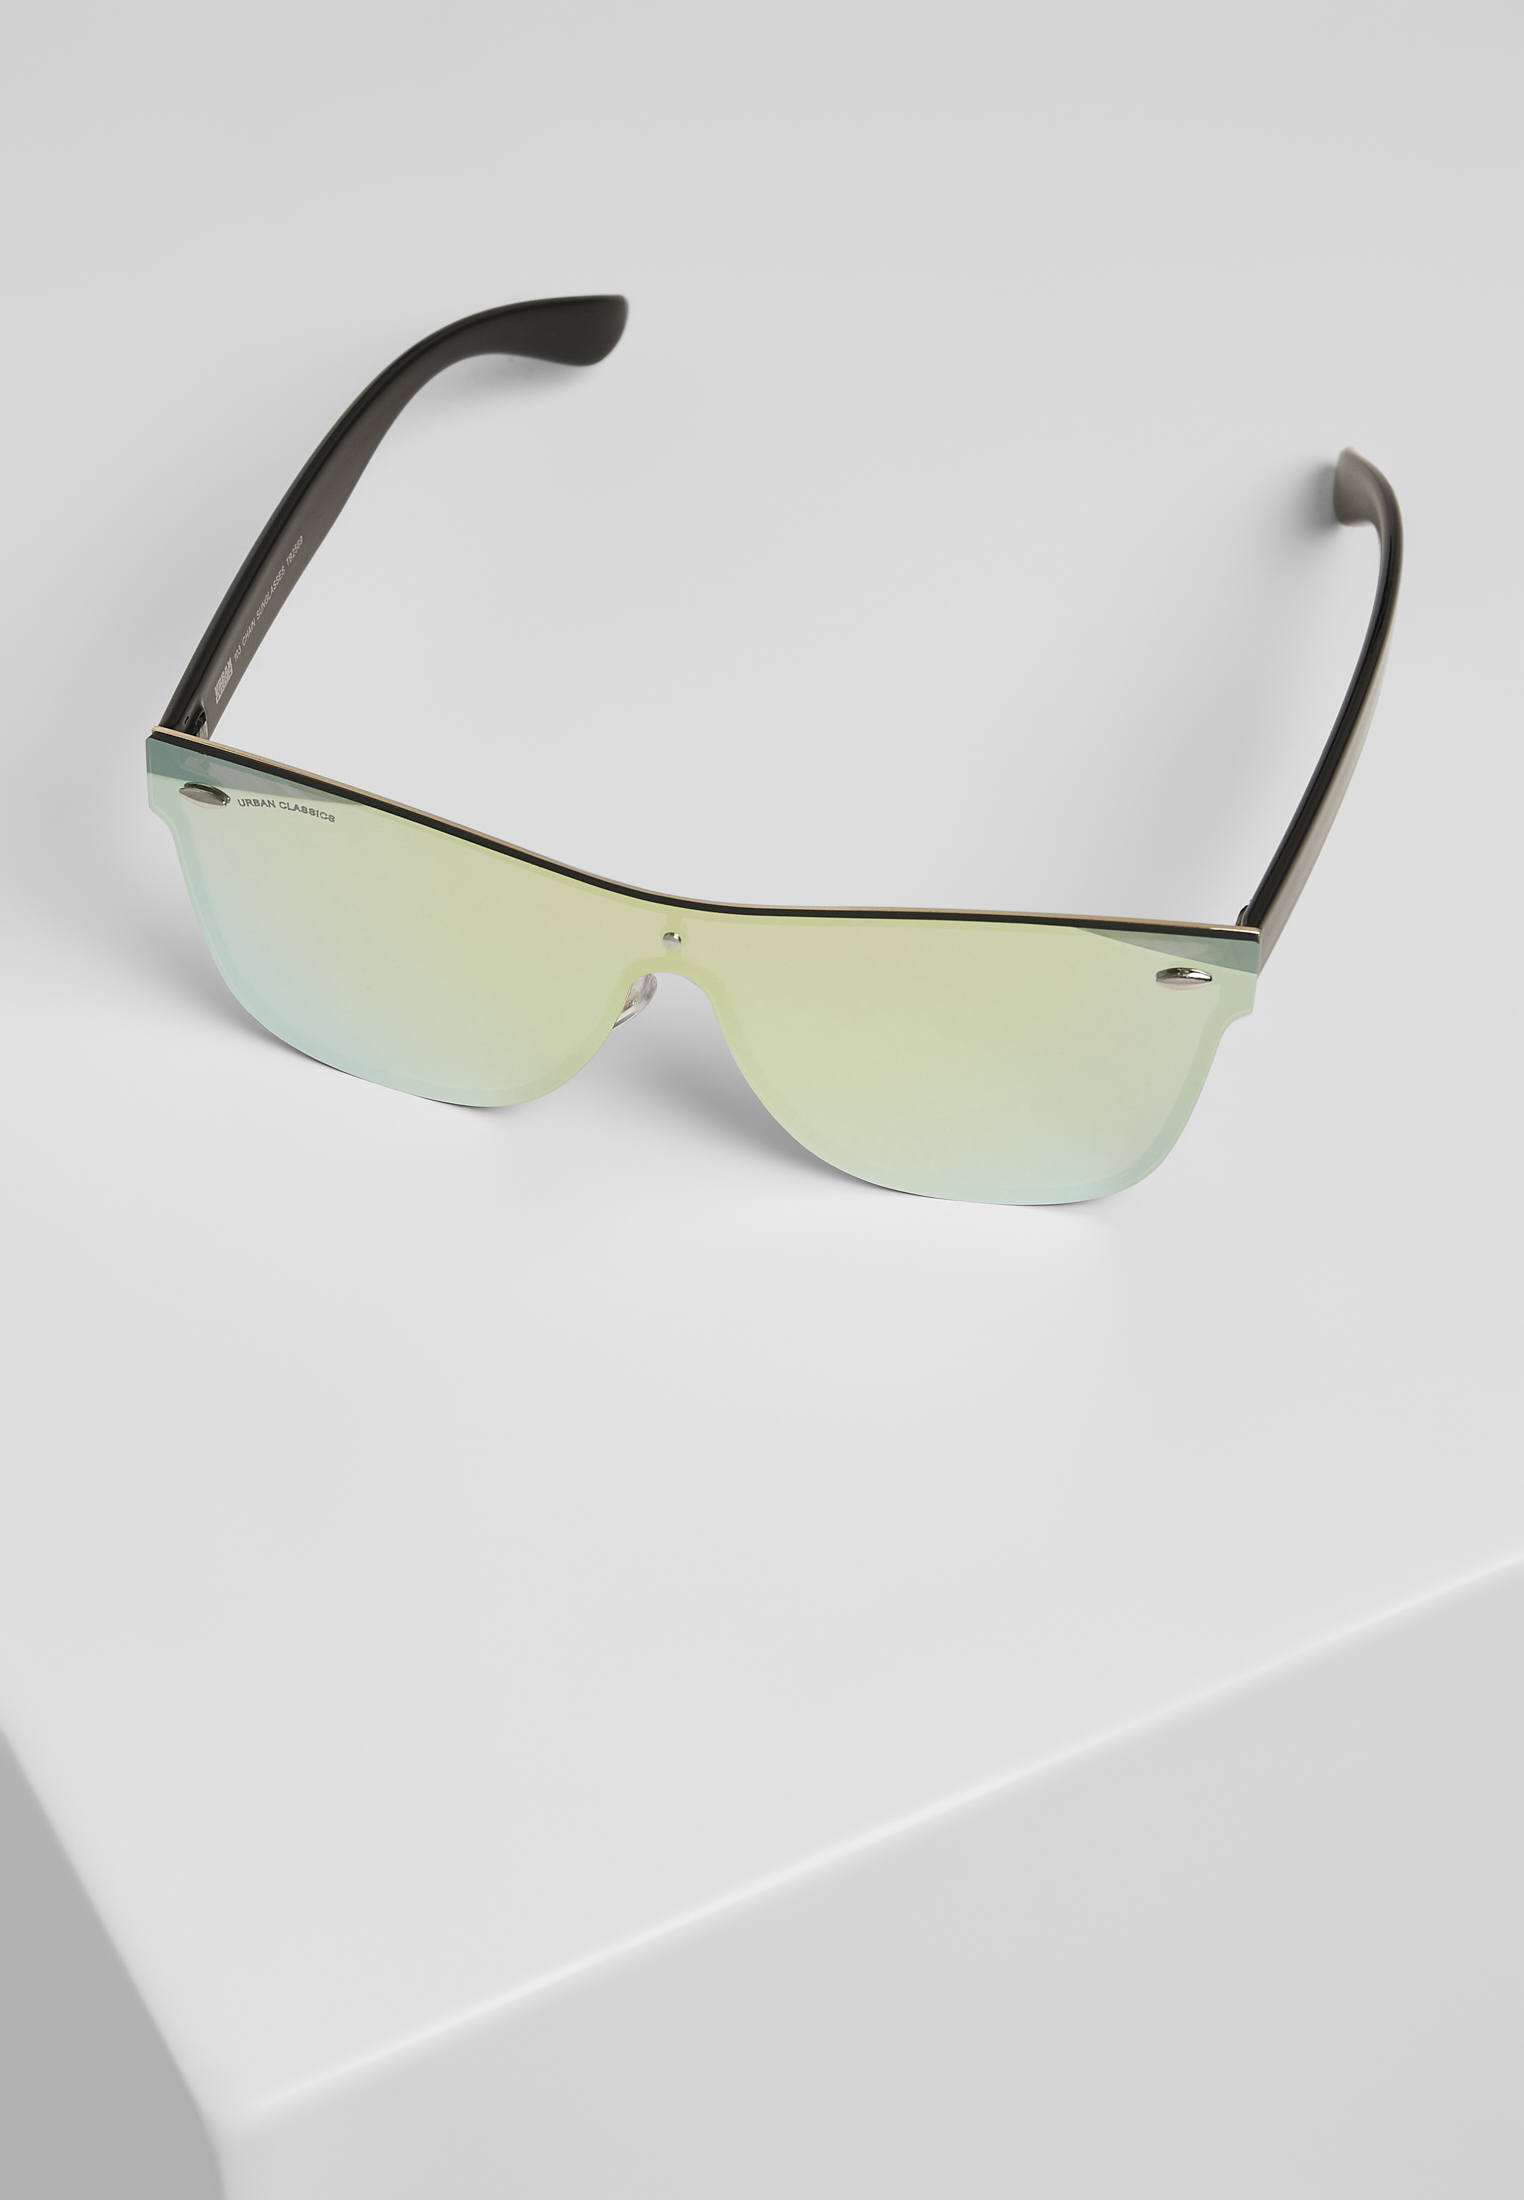 Sonnenbrillen 103 Chain Sunglasses in Farbe black/gold mirror